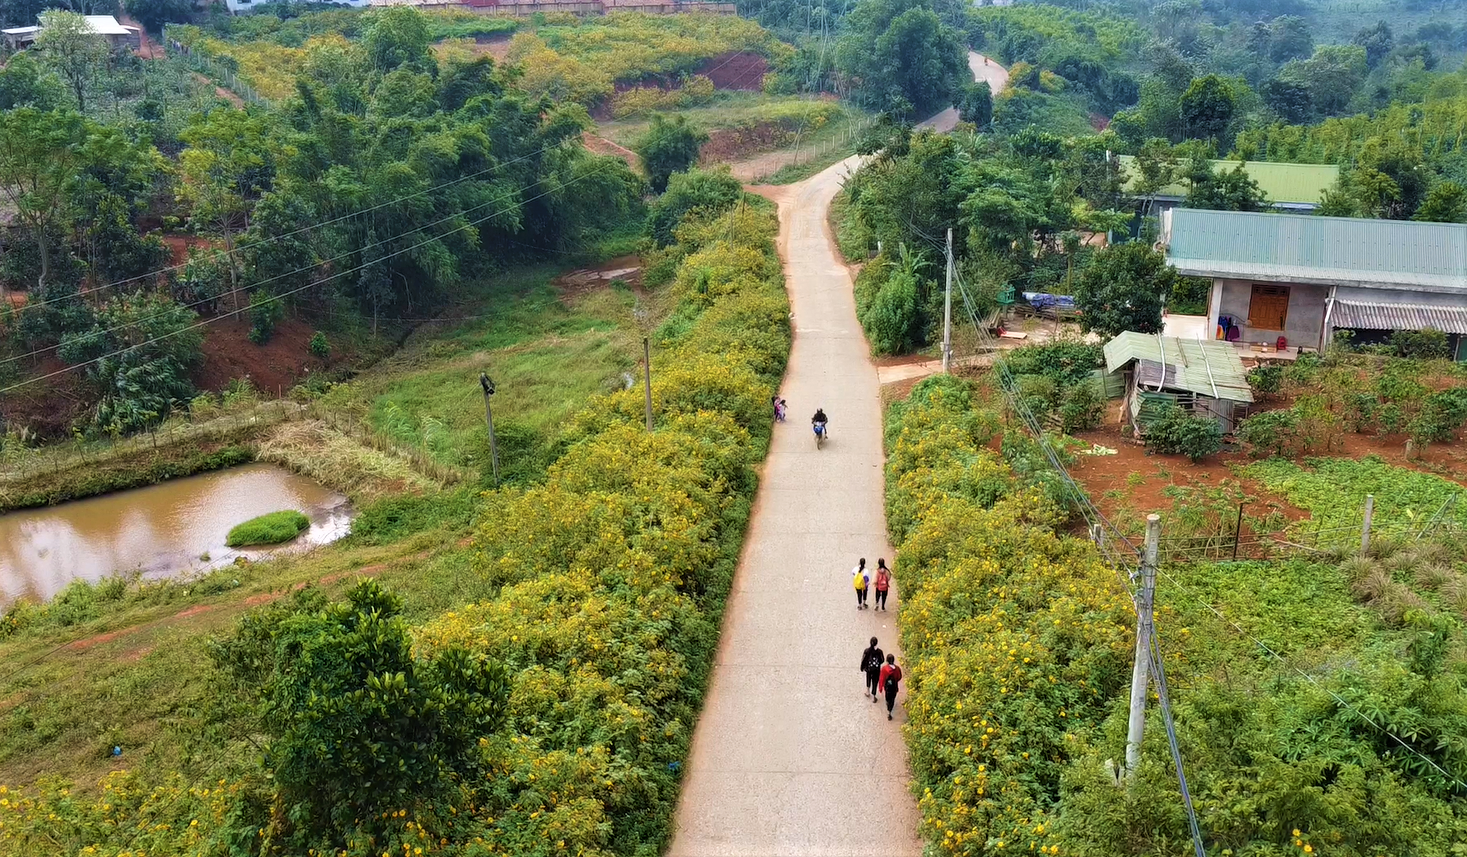 Những con đường hoa dã quỳ ở miền núi huyện Hướng Hóa đã góp phần làm đẹp cảnh quan thiên nhiên, thu hút du khách, phát triển du lịch cộng đồng theo hướng bền vững nơi miền tây Quảng Trị.